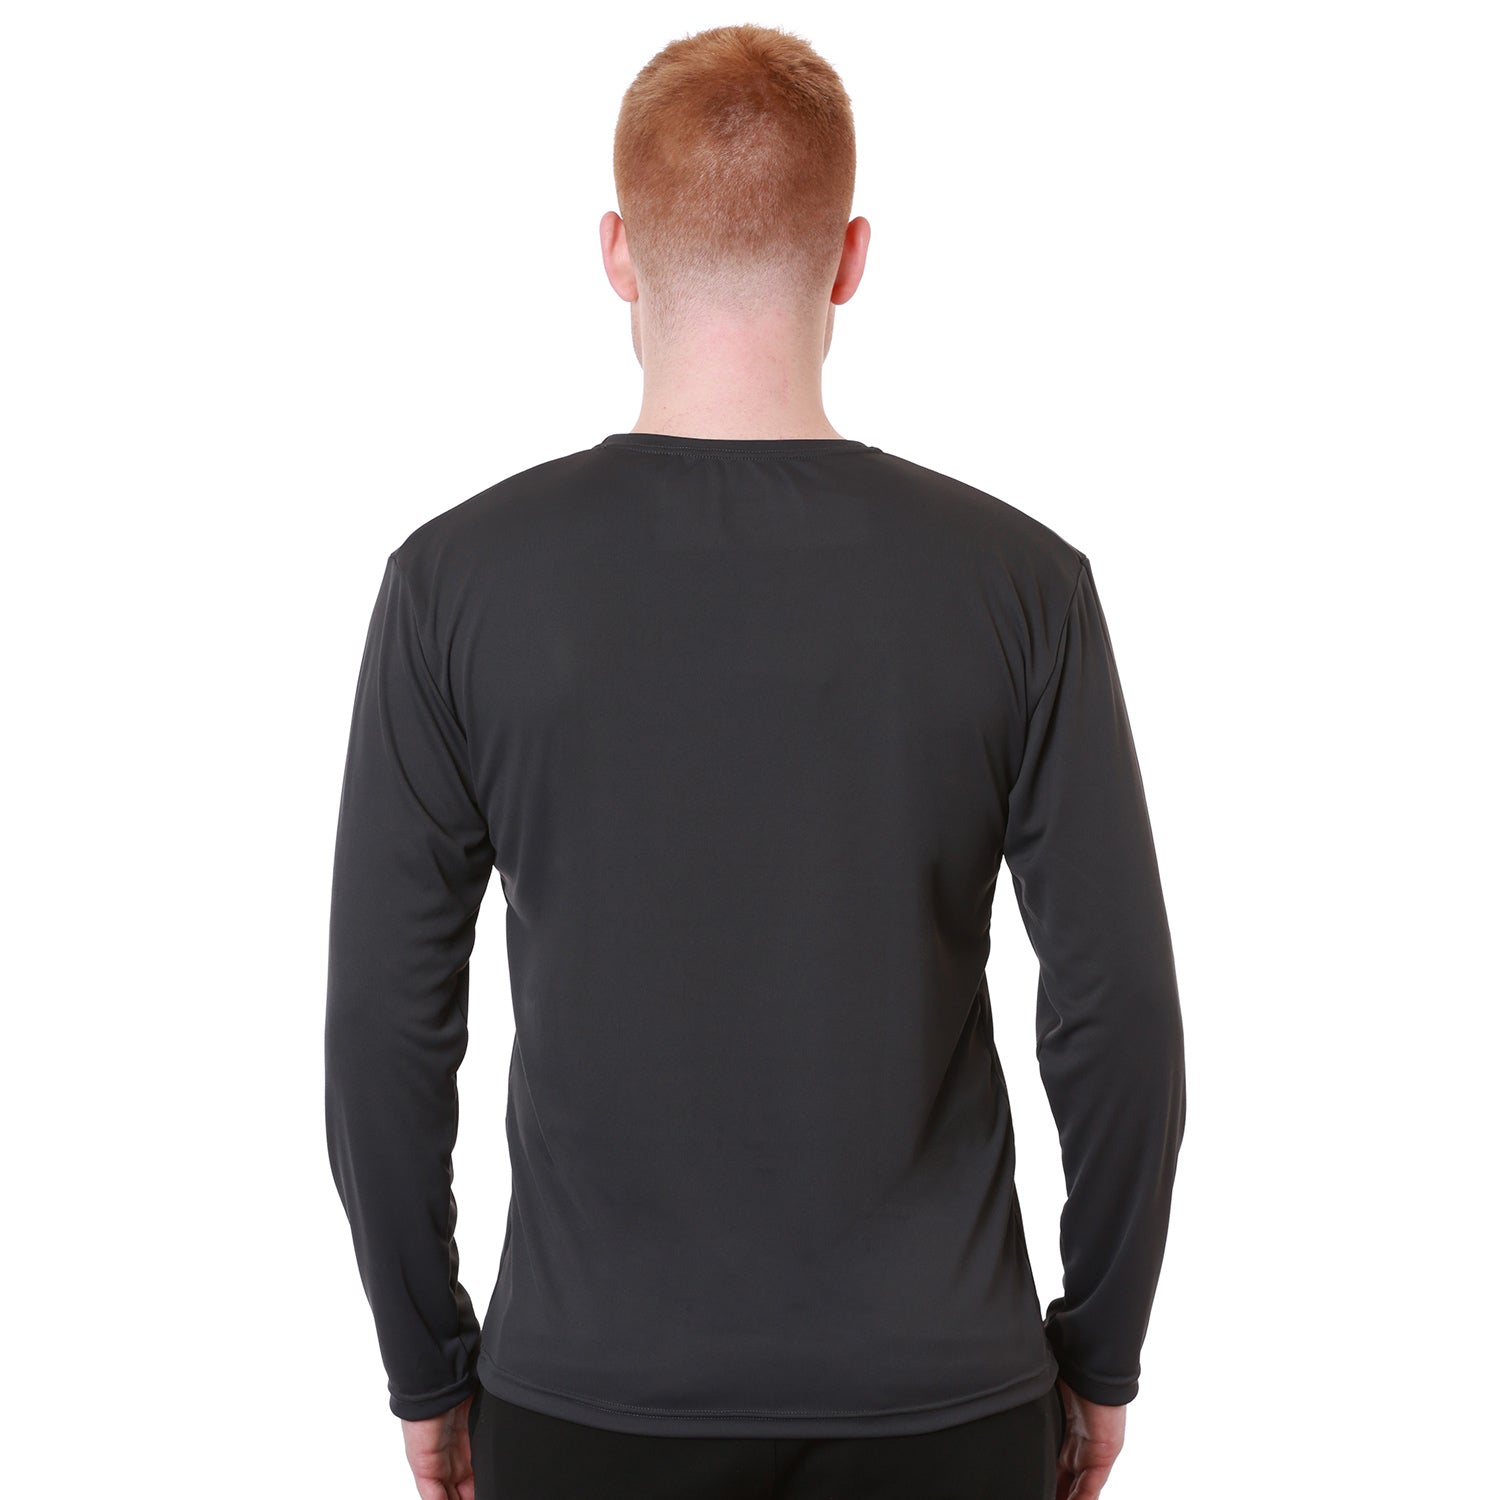 Relaxed Sierra Long Sleeve Shirt for Men